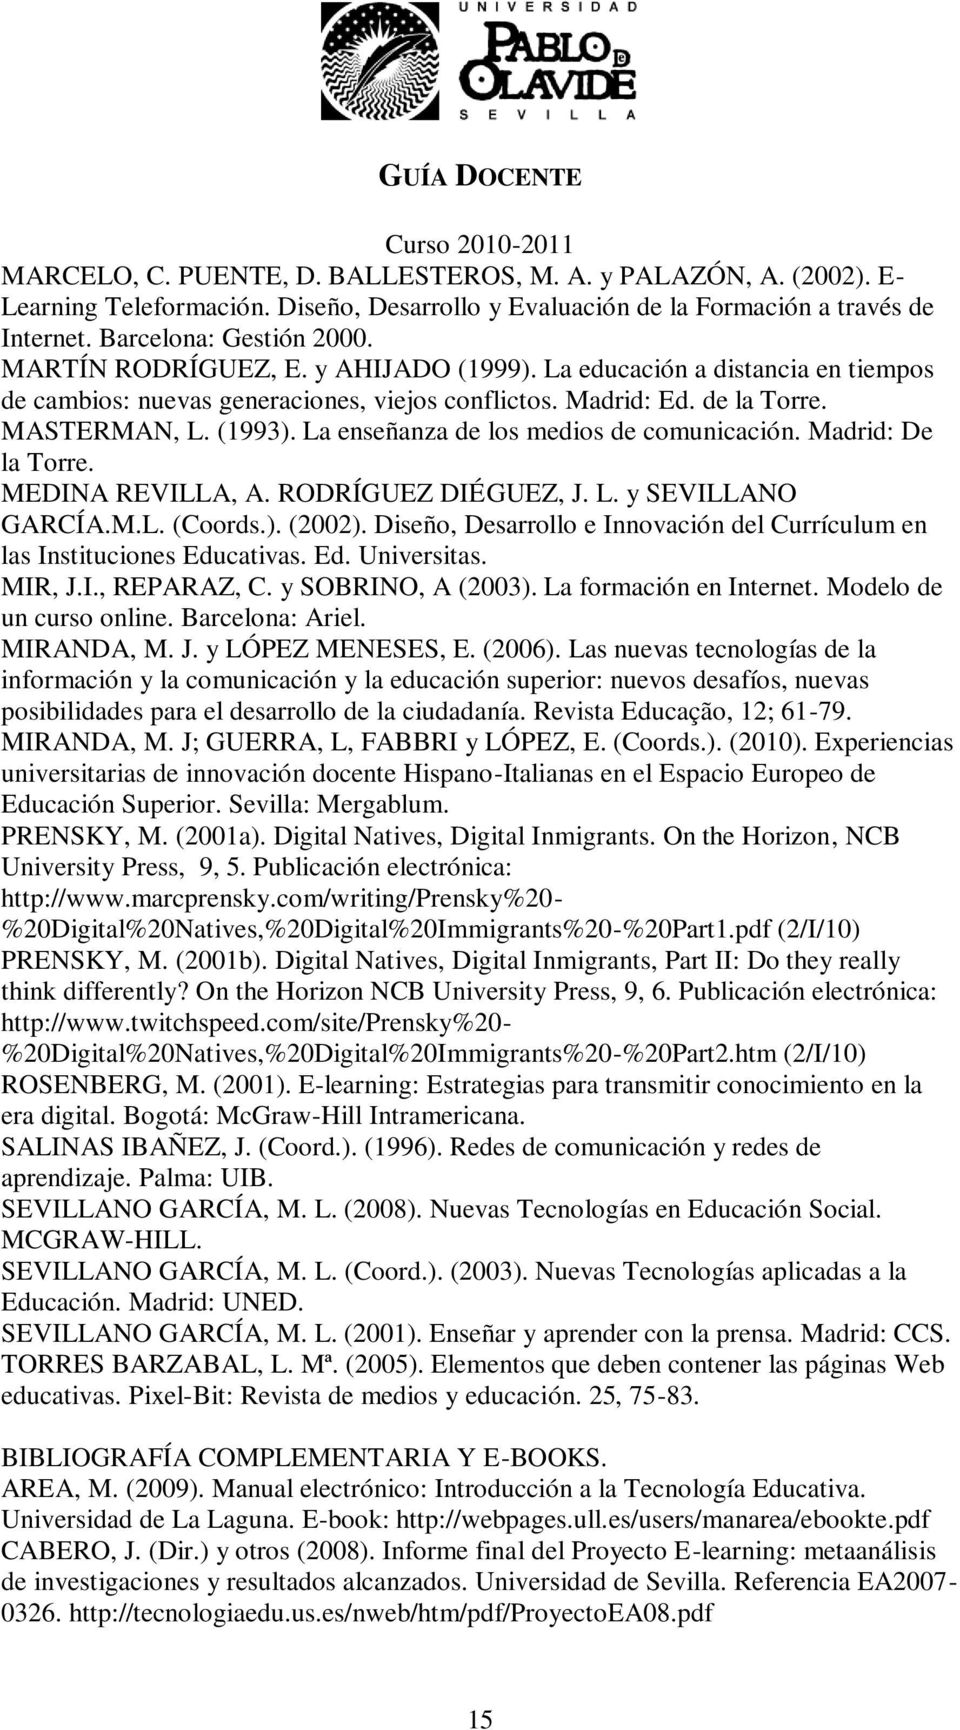 La enseñanza de los medios de comunicación. Madrid: De la Torre. MEDINA REVILLA, A. RODRÍGUEZ DIÉGUEZ, J. L. y SEVILLANO GARCÍA.M.L. (Coords.). (2002).